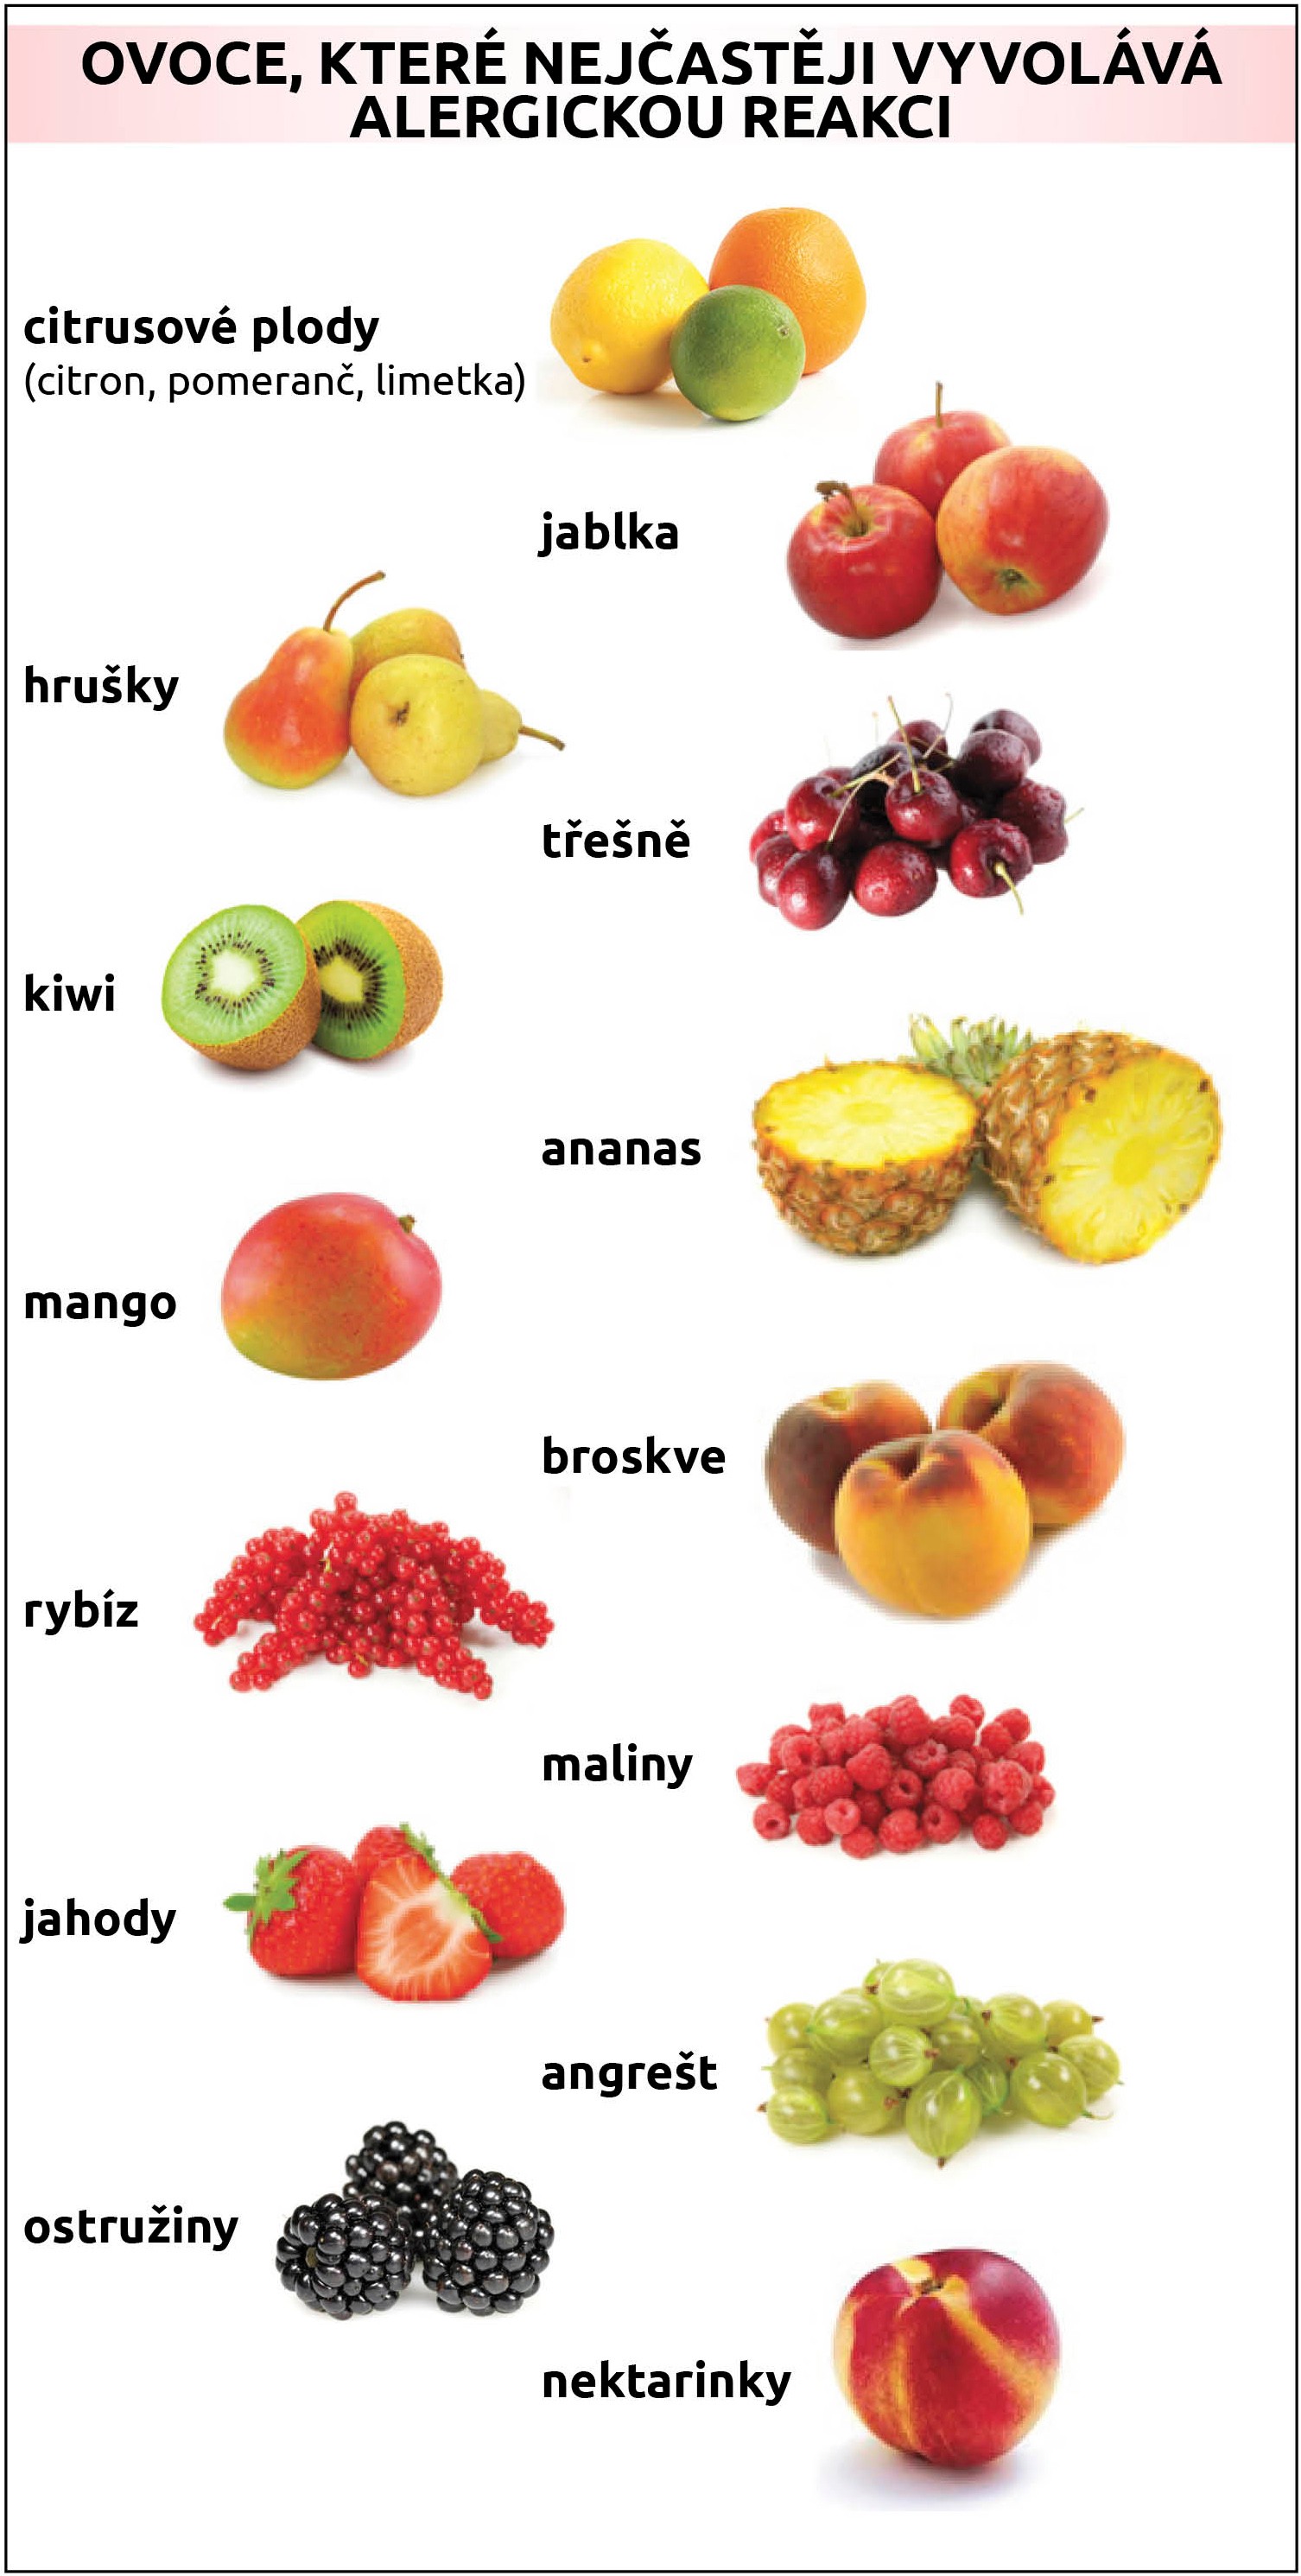 Jak se projevuje alergie na ovoce?